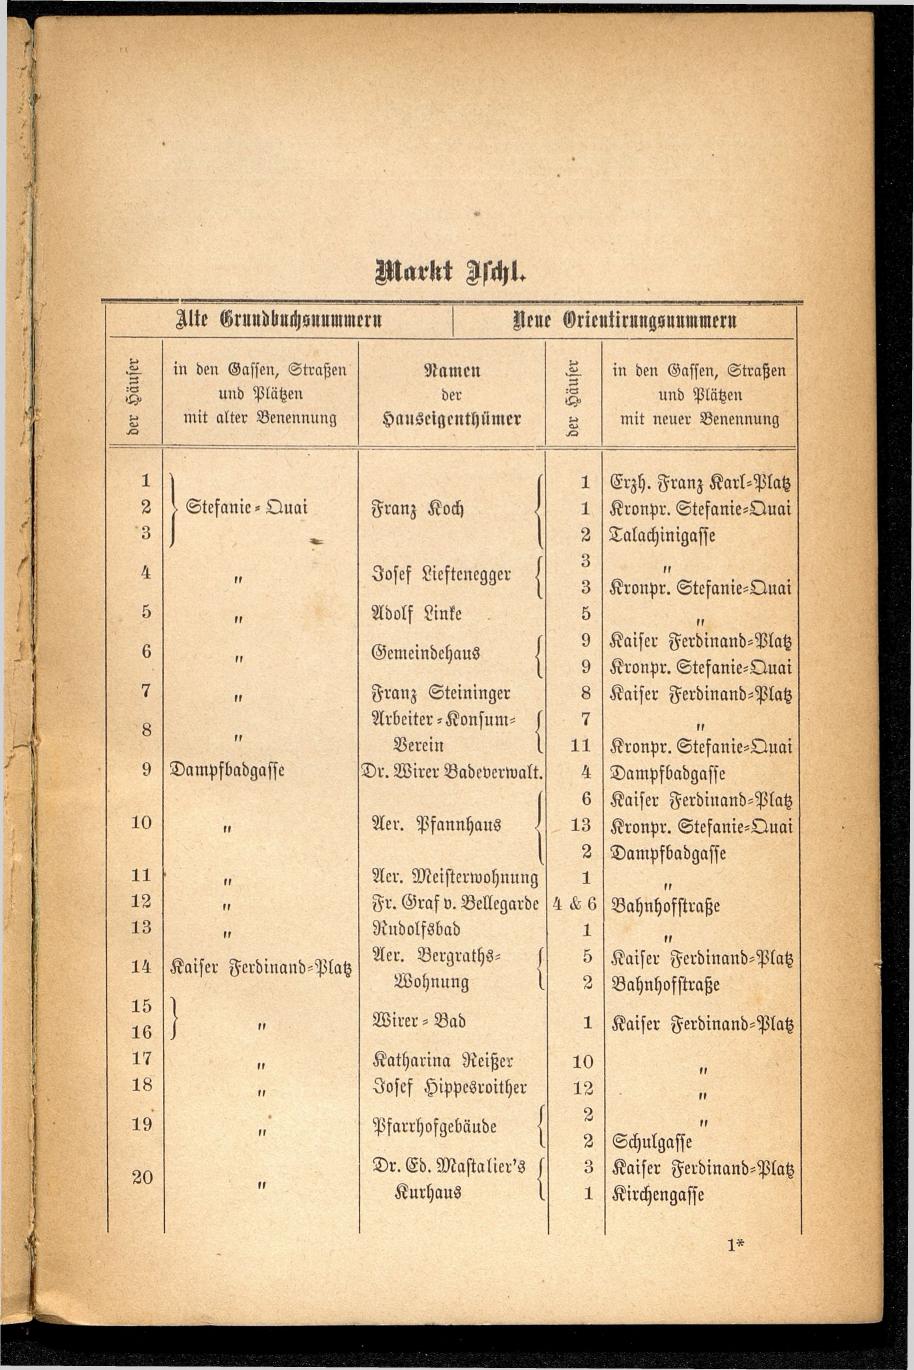 Häuser-Verzeichnis des Marktes und Kurortes Ischl nach den neuen Orientirungsnummern 1881 - Seite 7